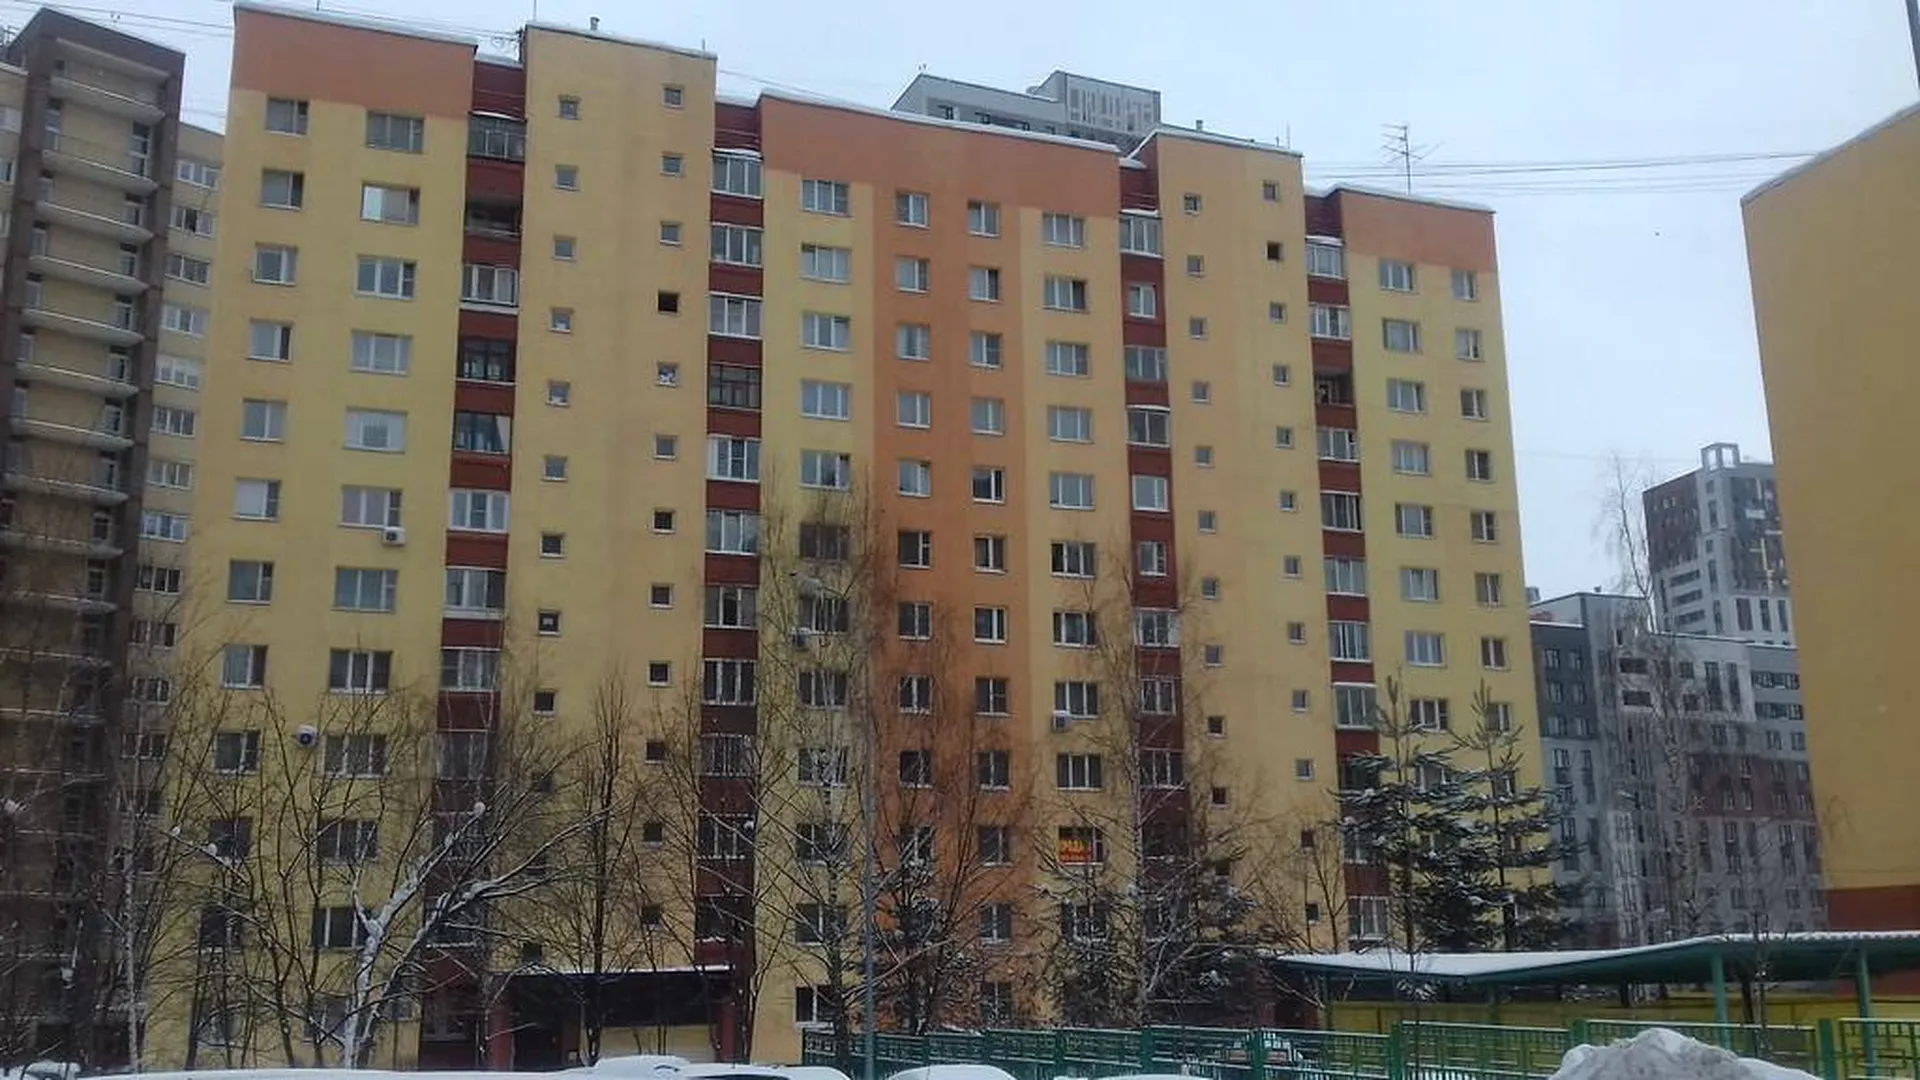 Выбросившая младенца из окна москвичка назвала себя сумасшедшей, чтобы избежать наказания